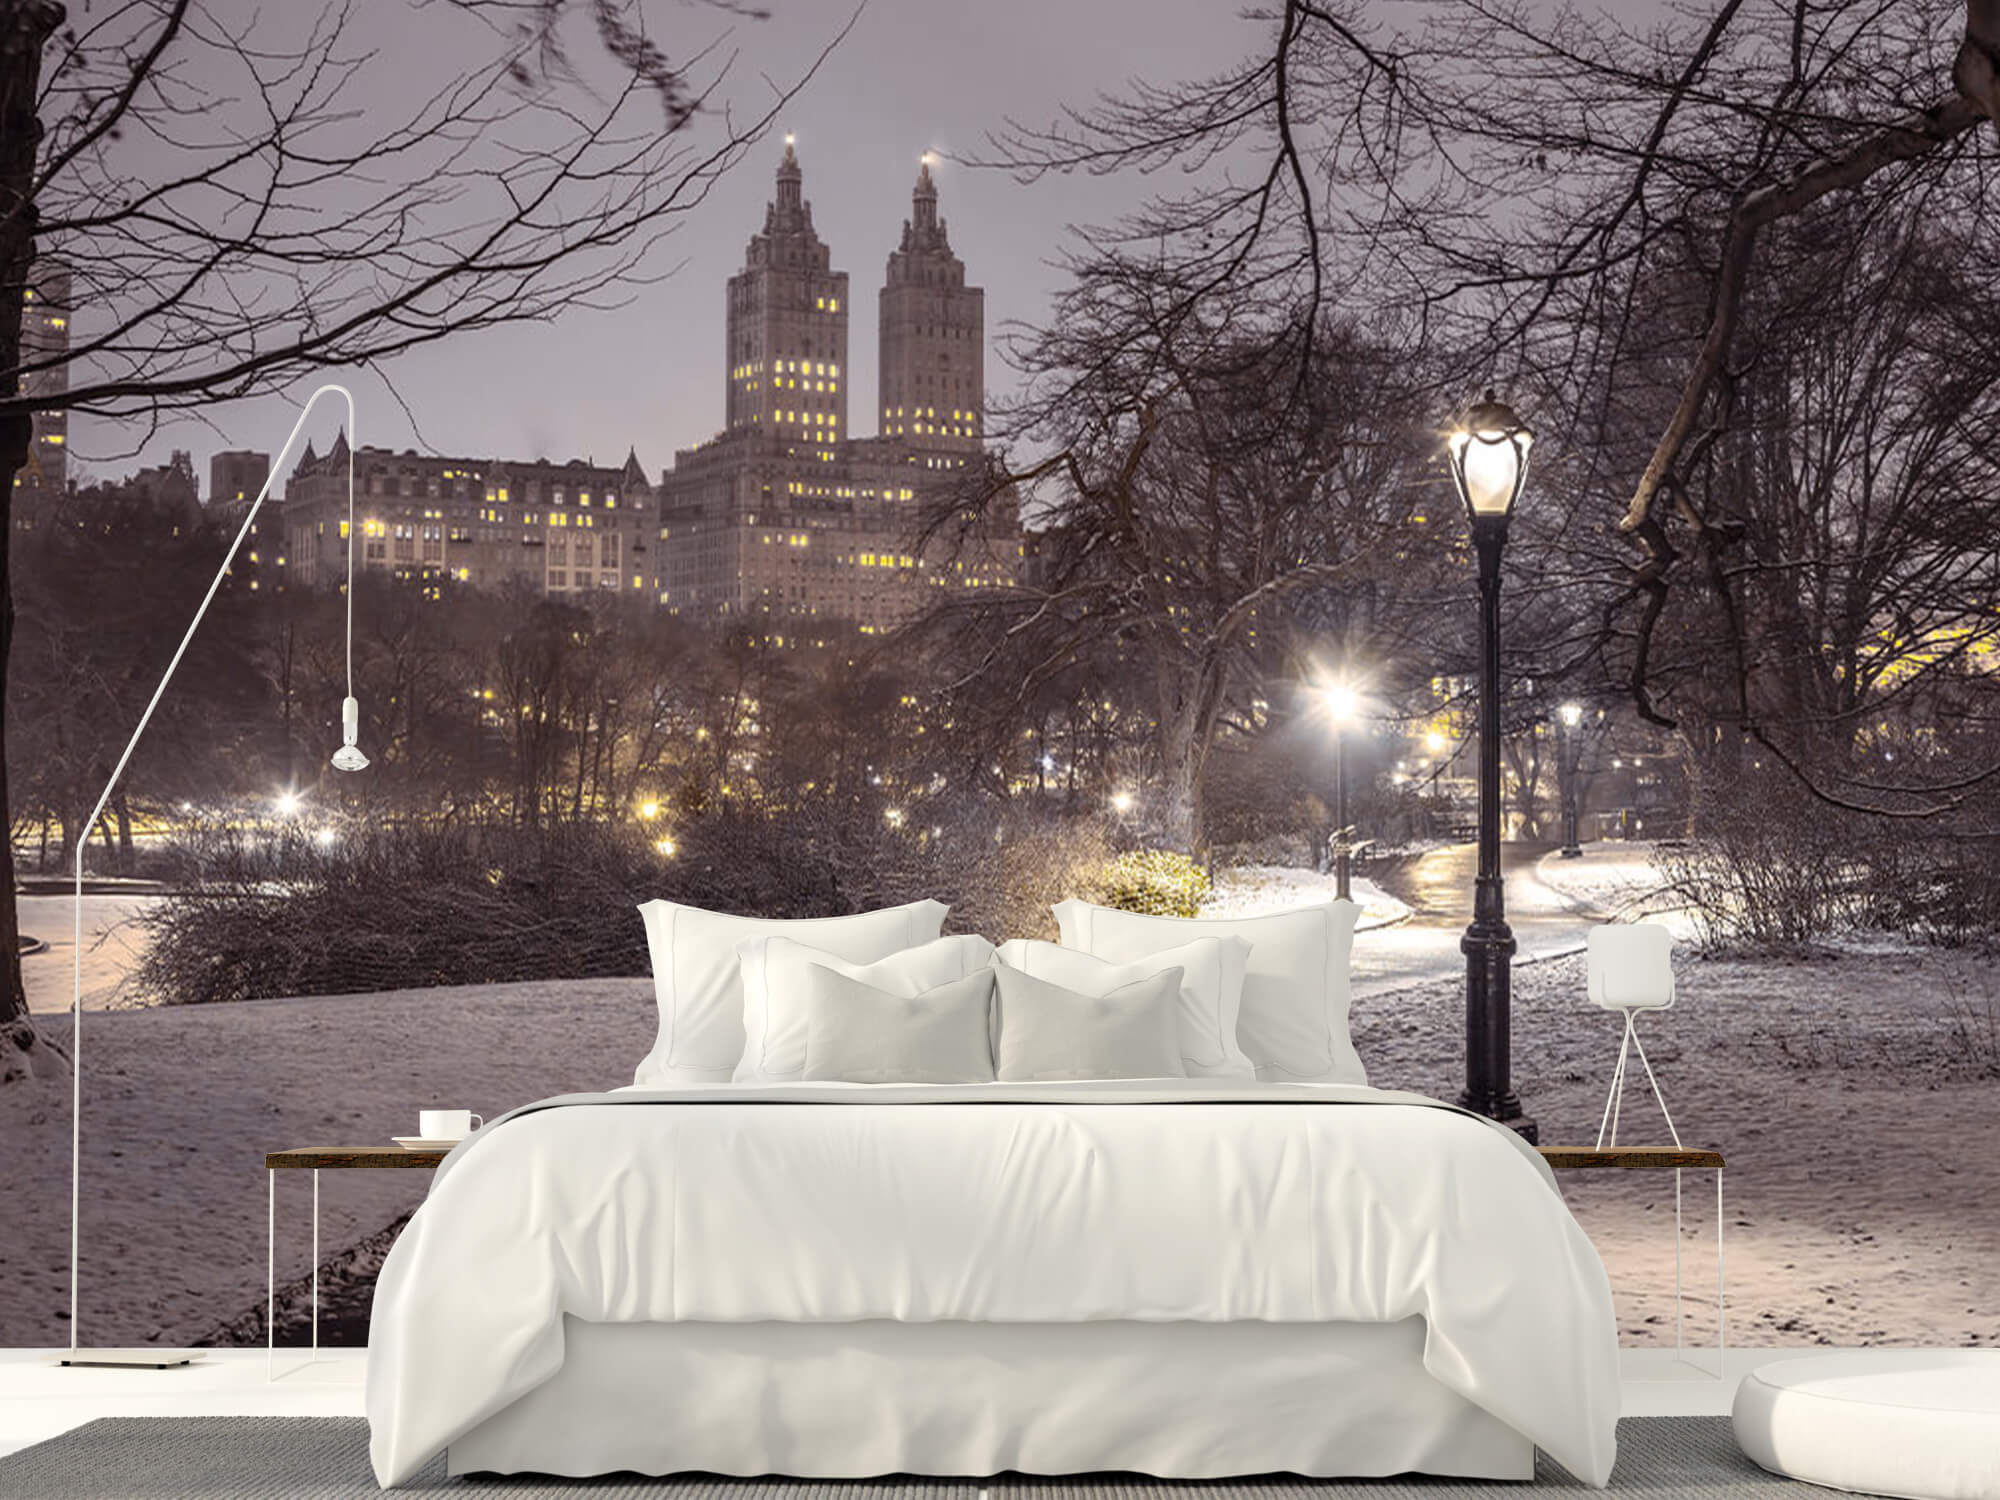  Papel pintado con Central Park nevado - Salón 11